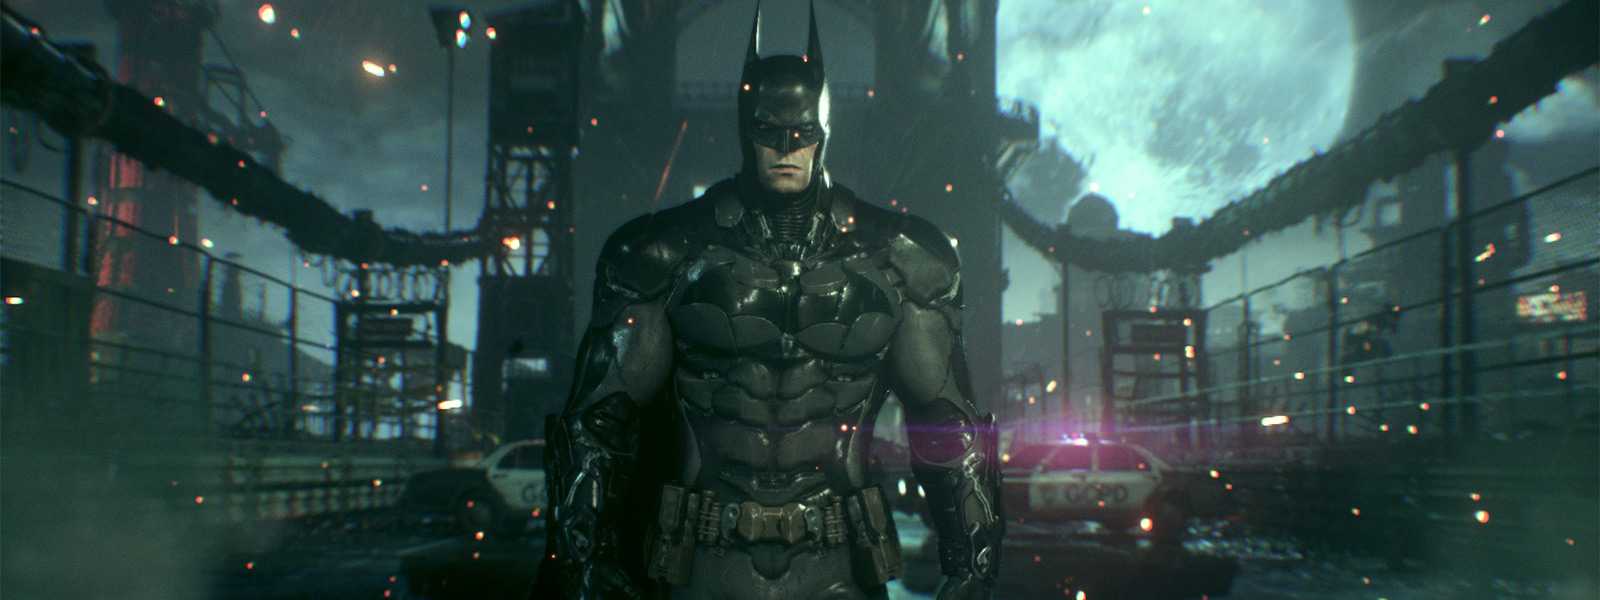 Прохождение игры Batman Arkham Knight Бэтман рыцарь Аркхема на 100 Миссии 1 — 3 Долгая ночь, Предотвратить взрыв, Спасти Оракула